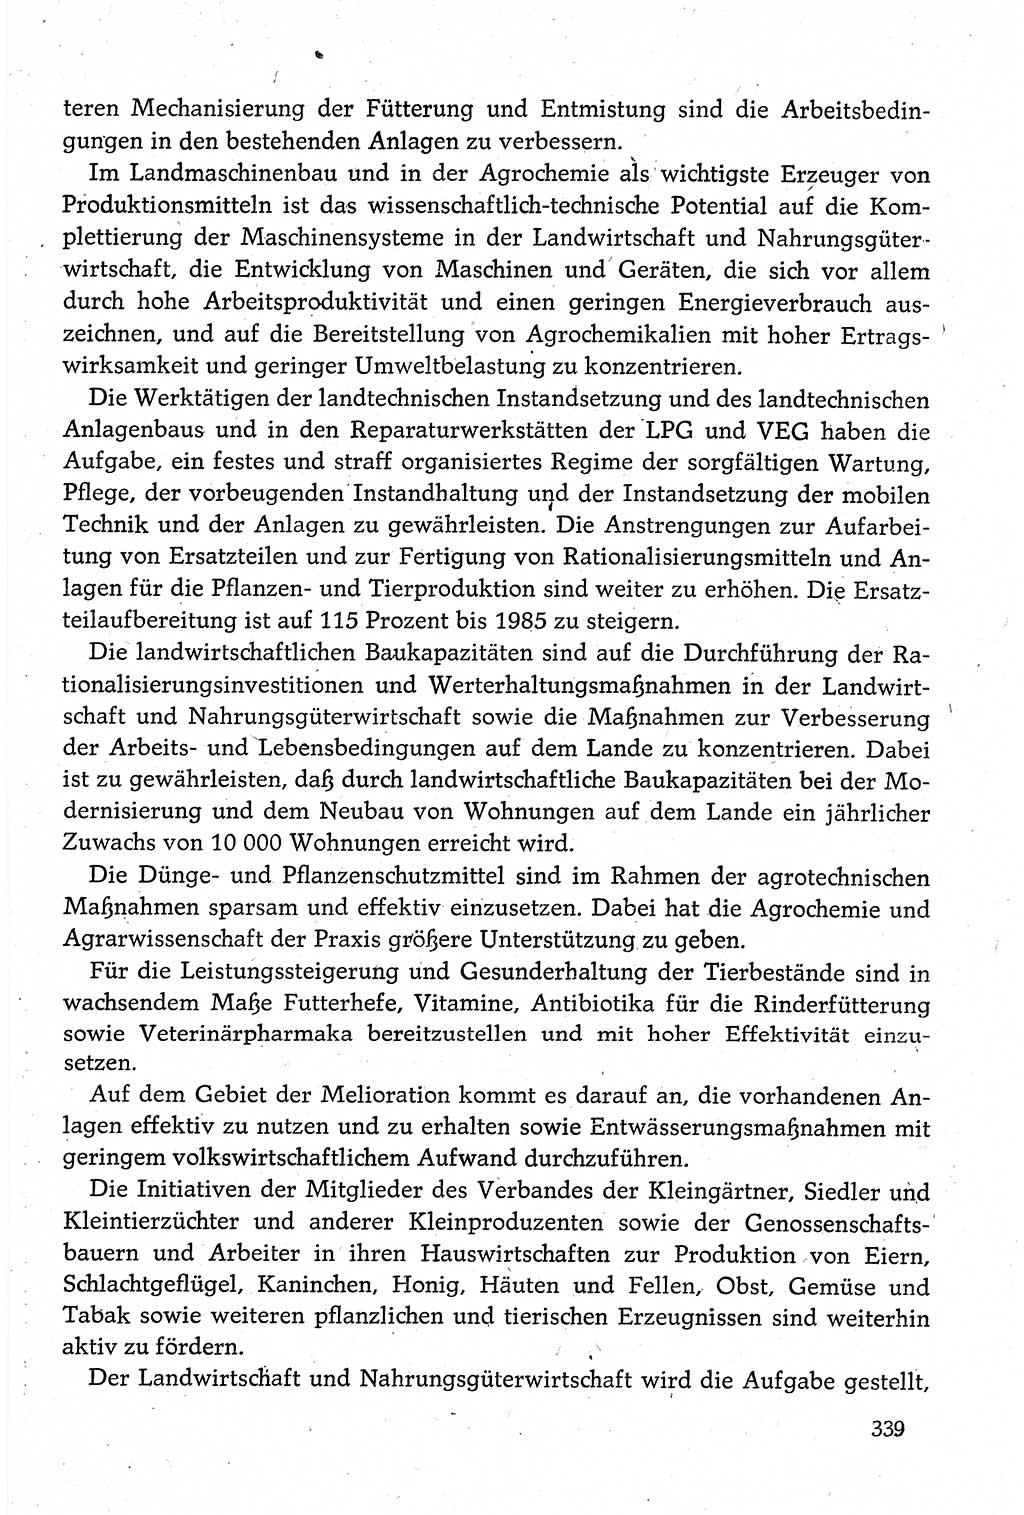 Dokumente der Sozialistischen Einheitspartei Deutschlands (SED) [Deutsche Demokratische Republik (DDR)] 1980-1981, Seite 339 (Dok. SED DDR 1980-1981, S. 339)